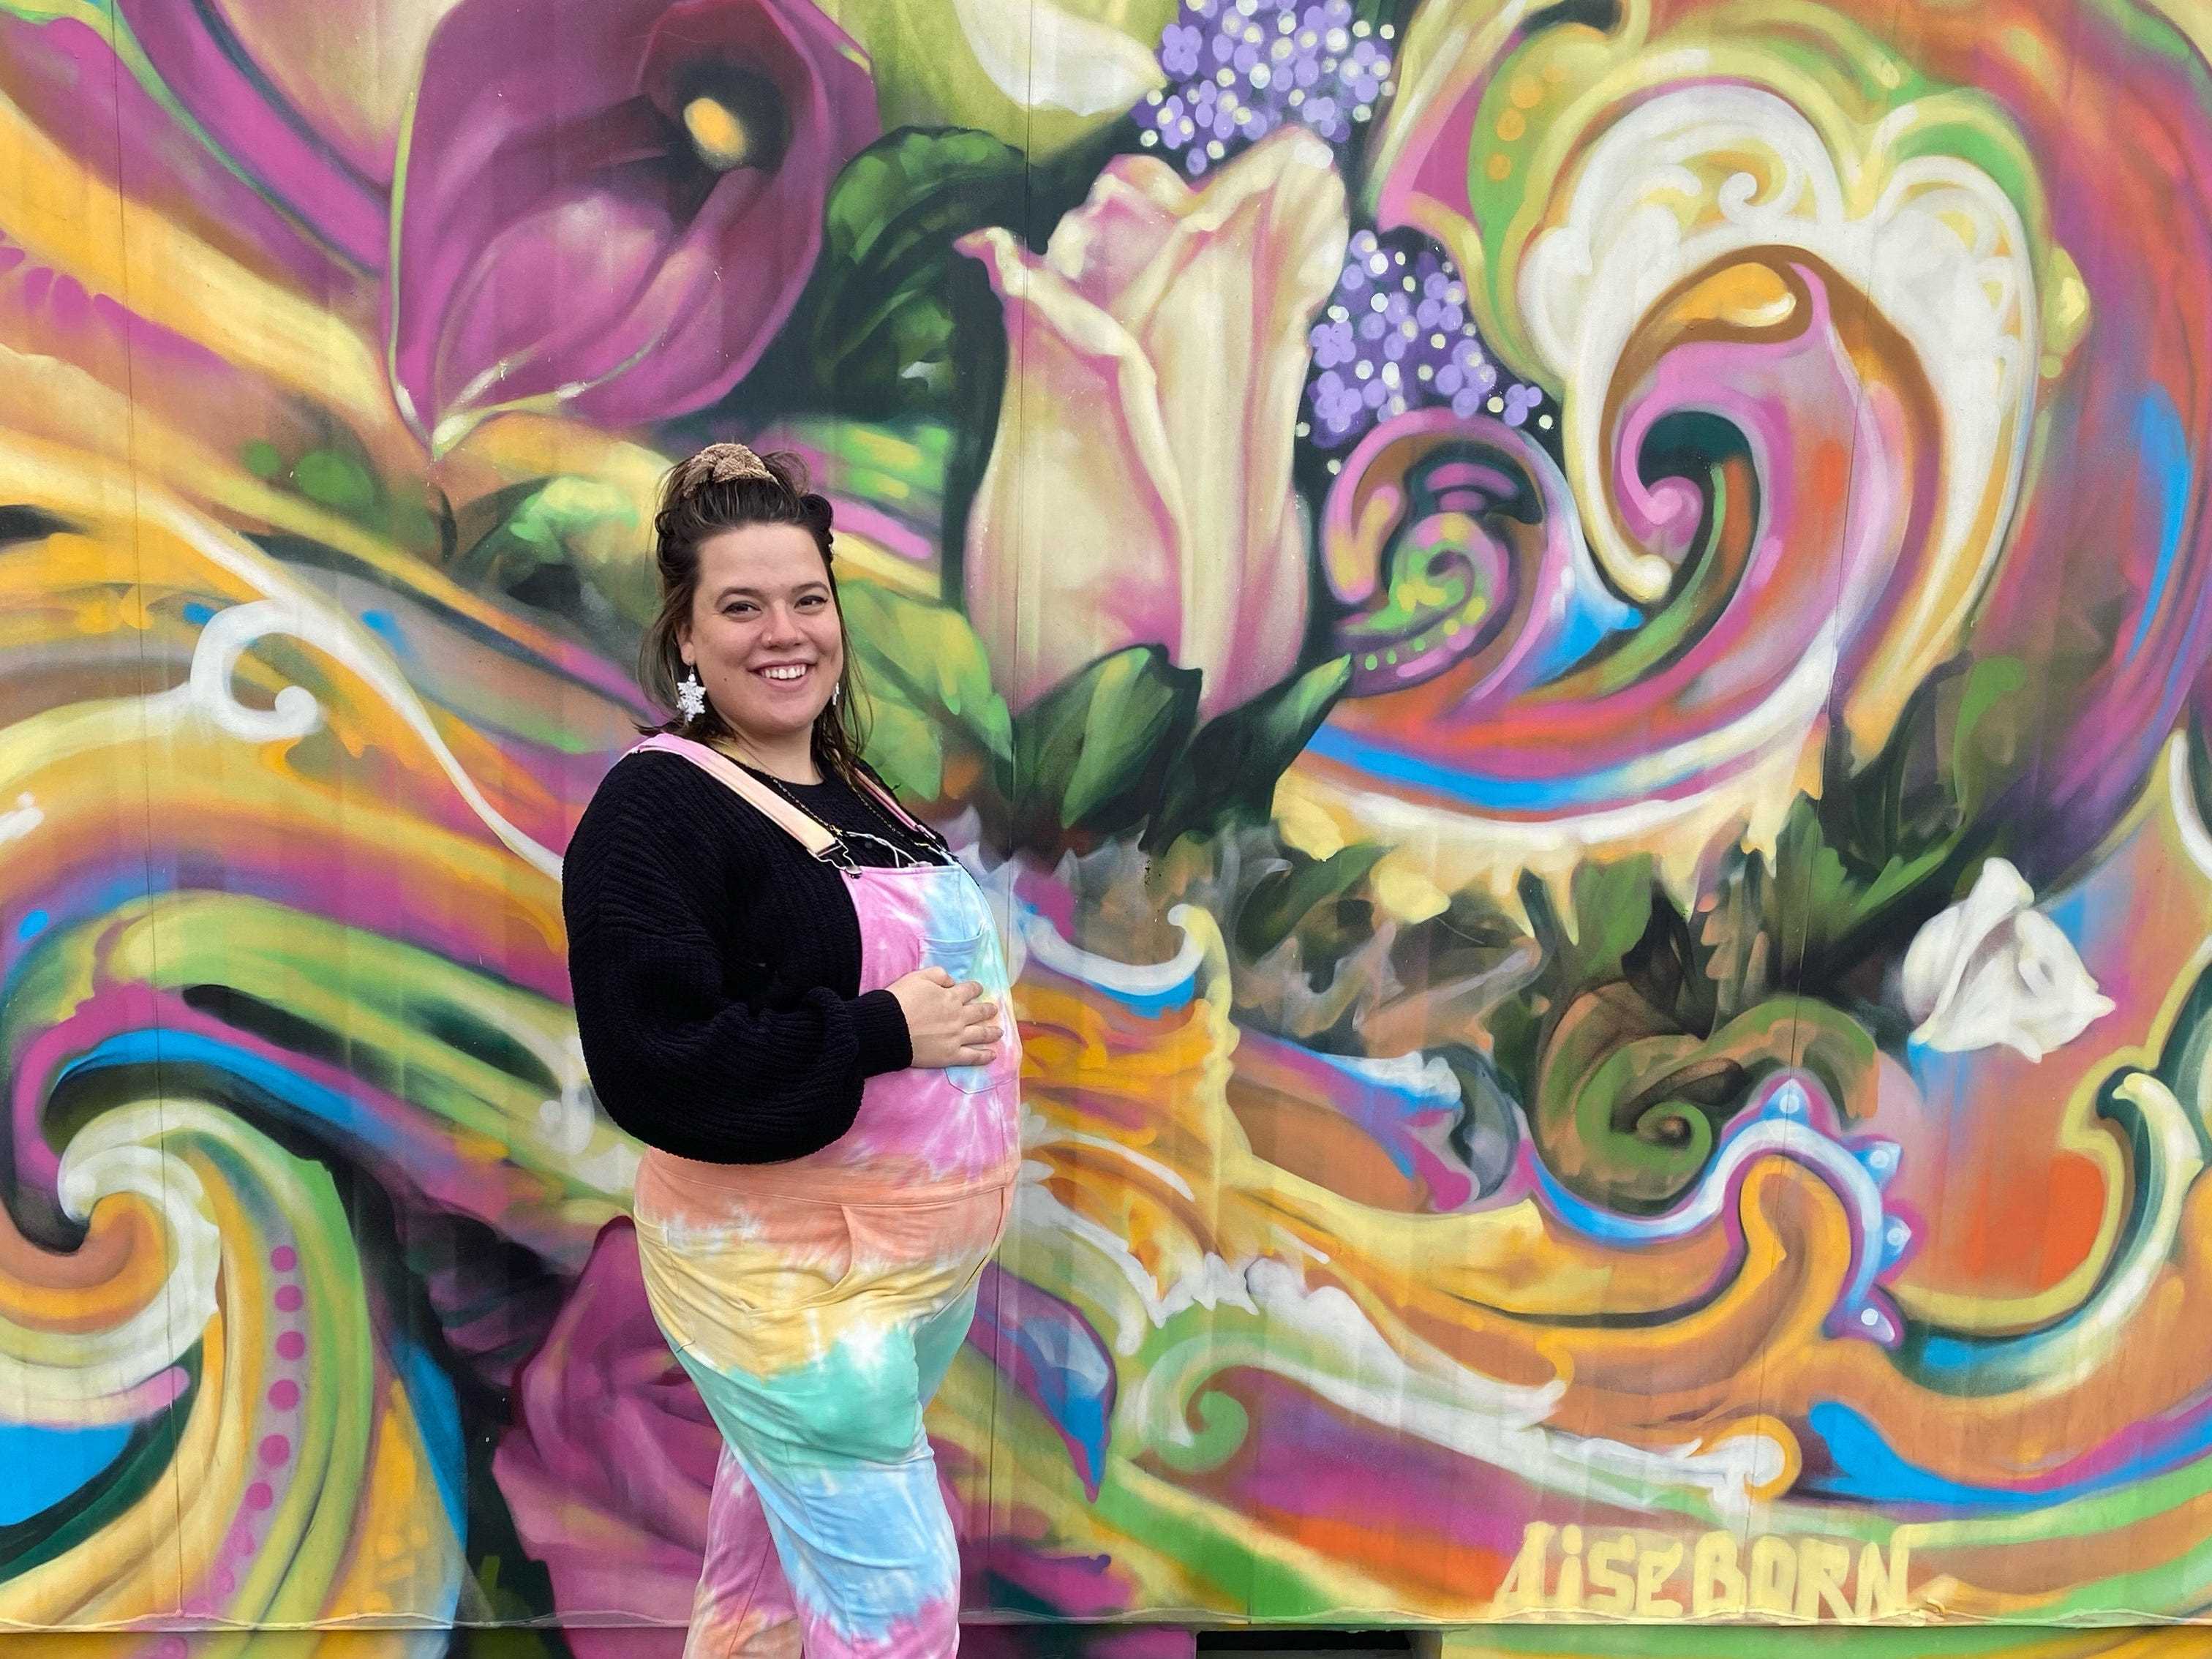 Der Schriftsteller im Batik-Overall posiert vor einem farbenfrohen Wandgemälde